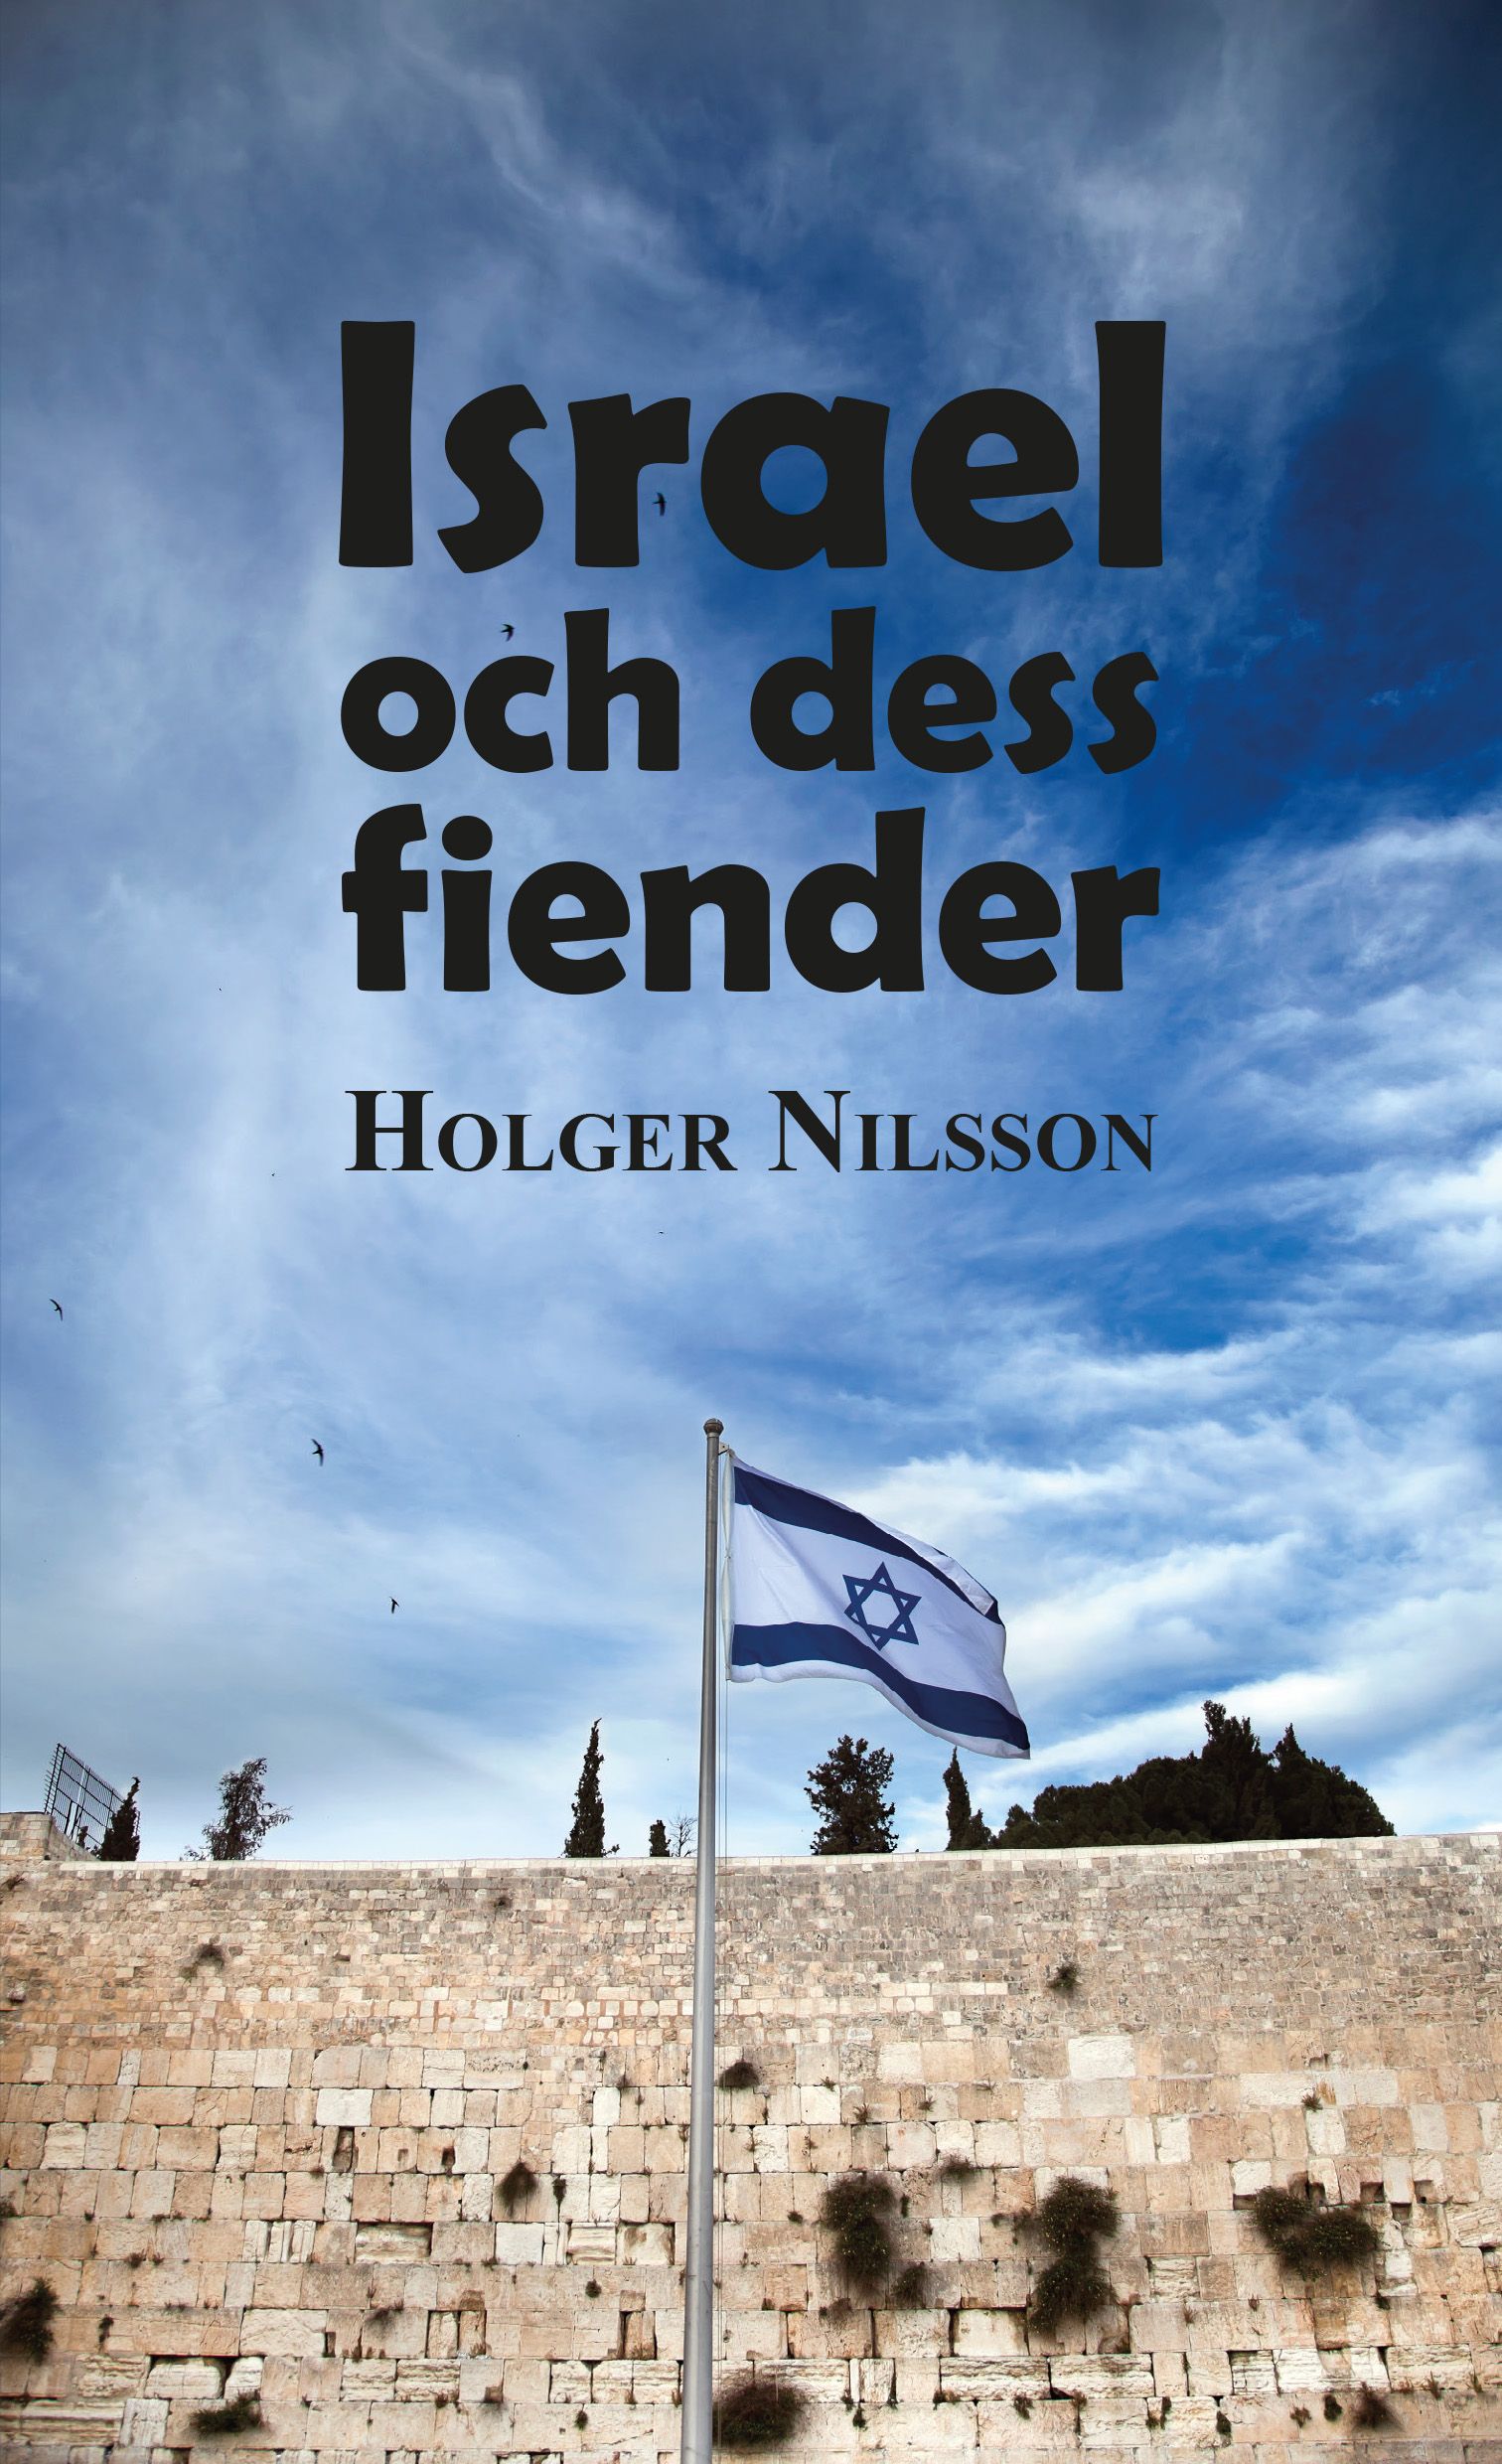 Israel och dess fiender, e-bok av Holger Nilsson